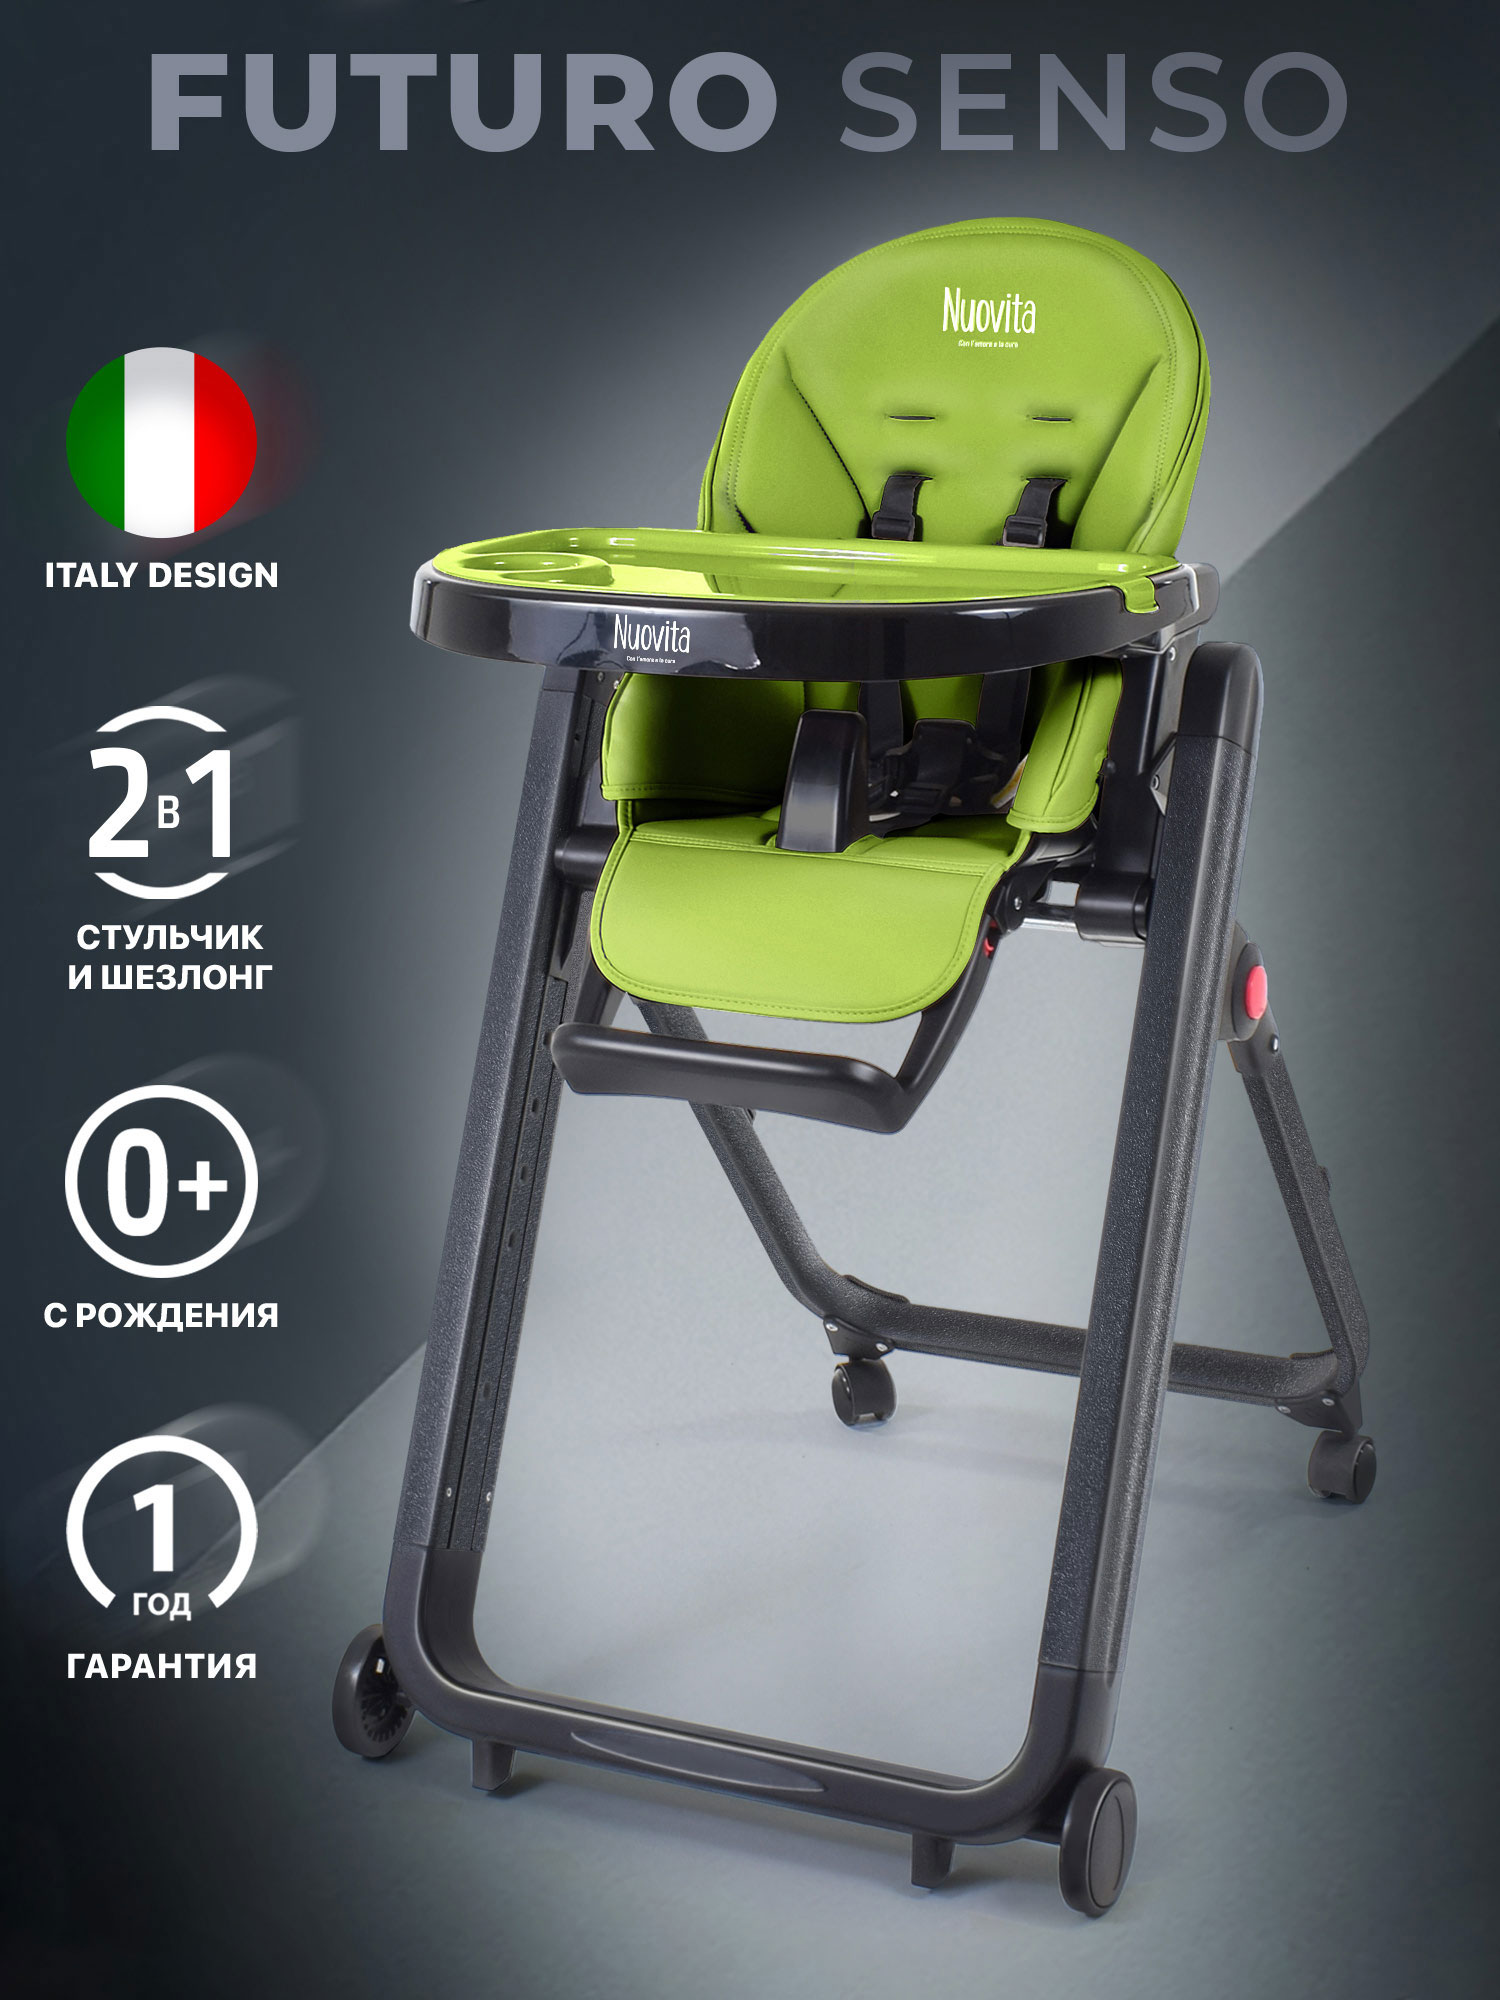 Стульчик для кормления Nuovita Futuro Senso Nero (Verde/Зеленый) стульчик для кормления nuovita futuro nero blu голубой